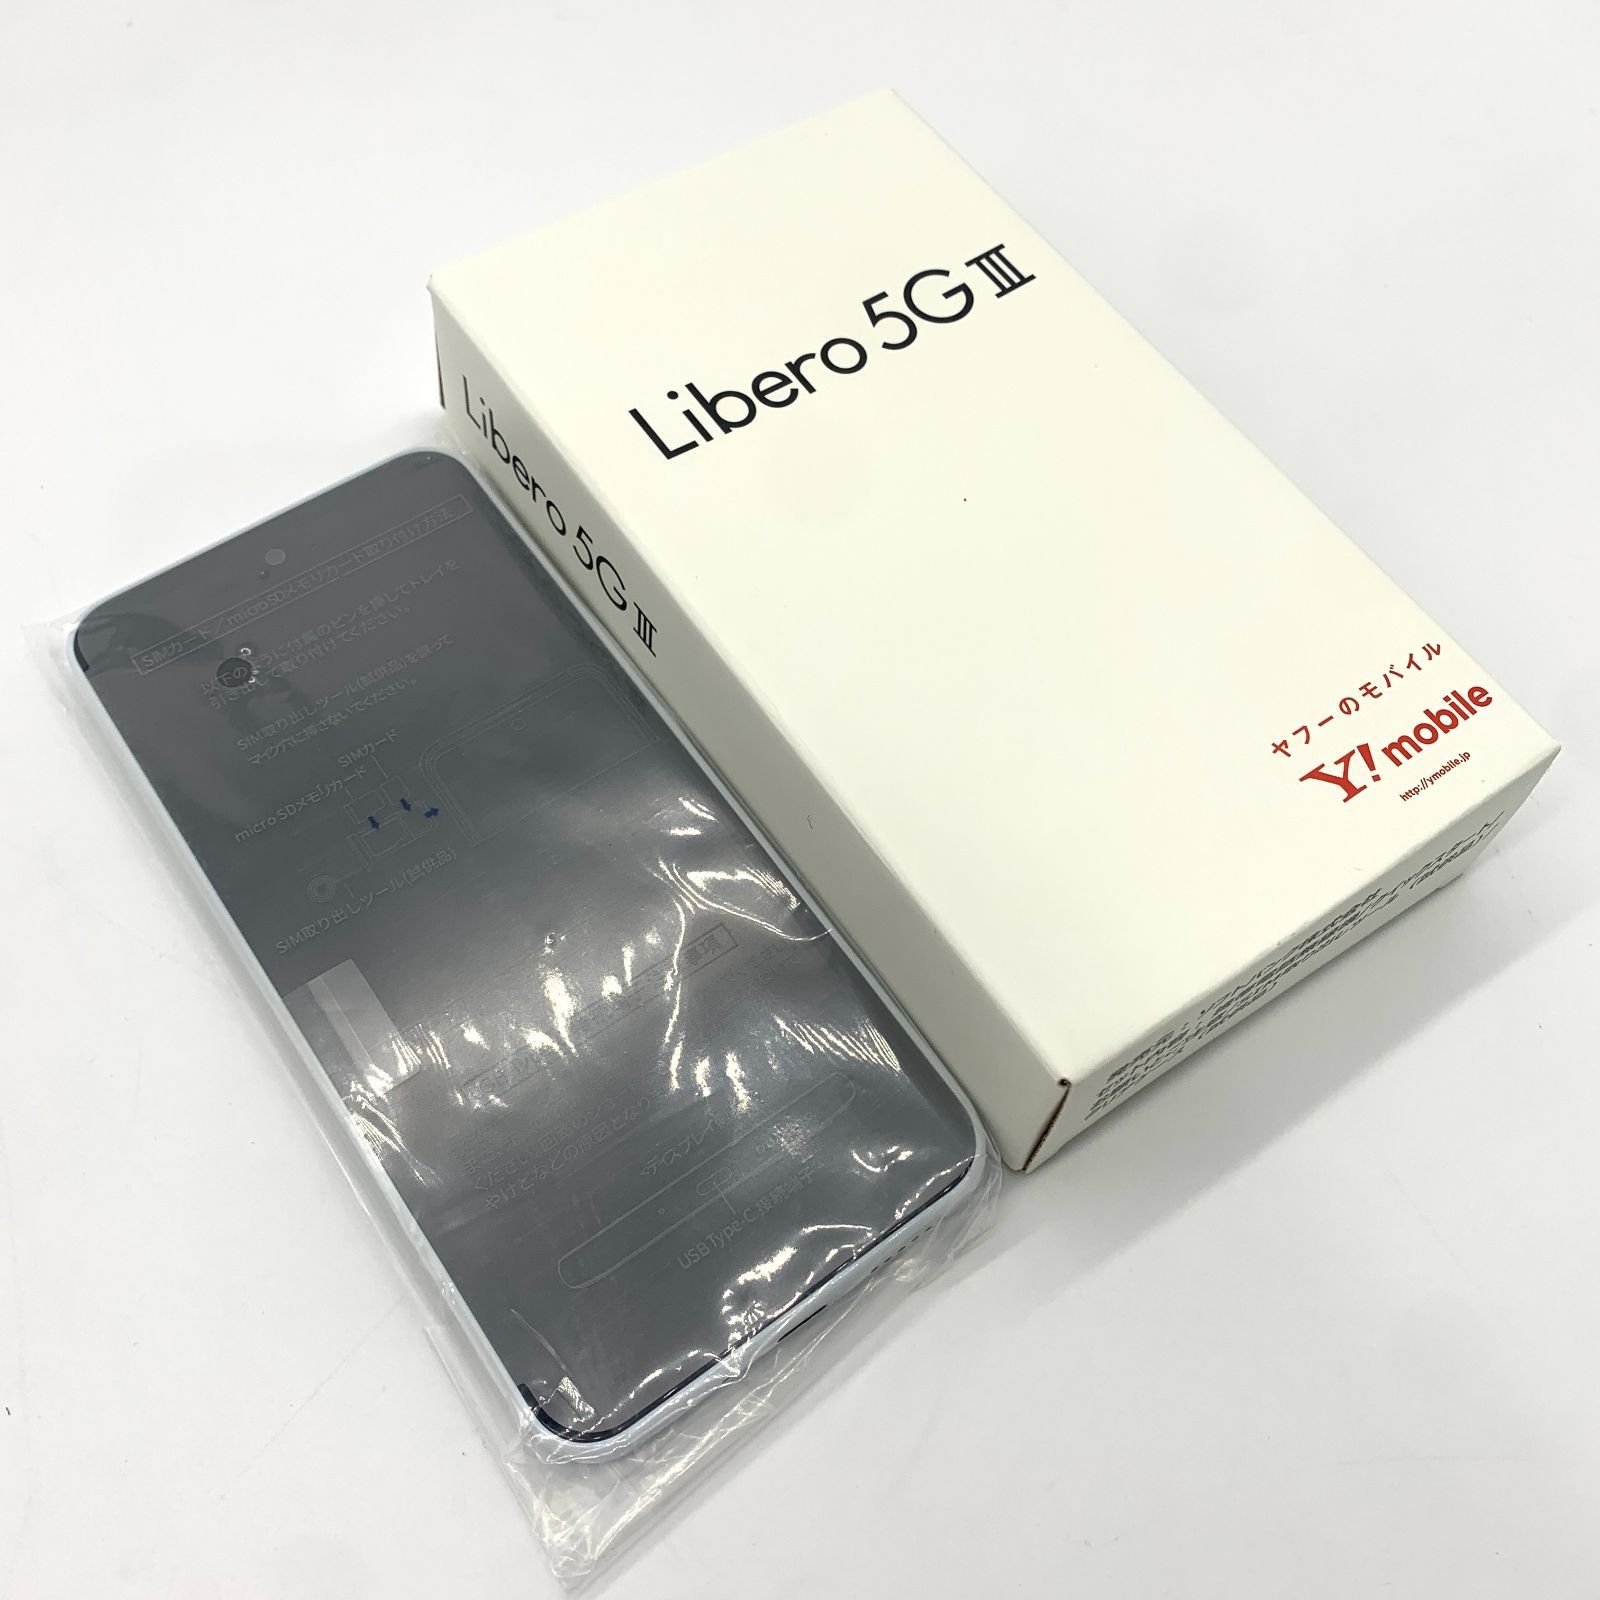 ▽【未使用品】Libero 5G II ホワイト A103ZT スマートフォン 買取ELITE メルカリ店 メルカリ